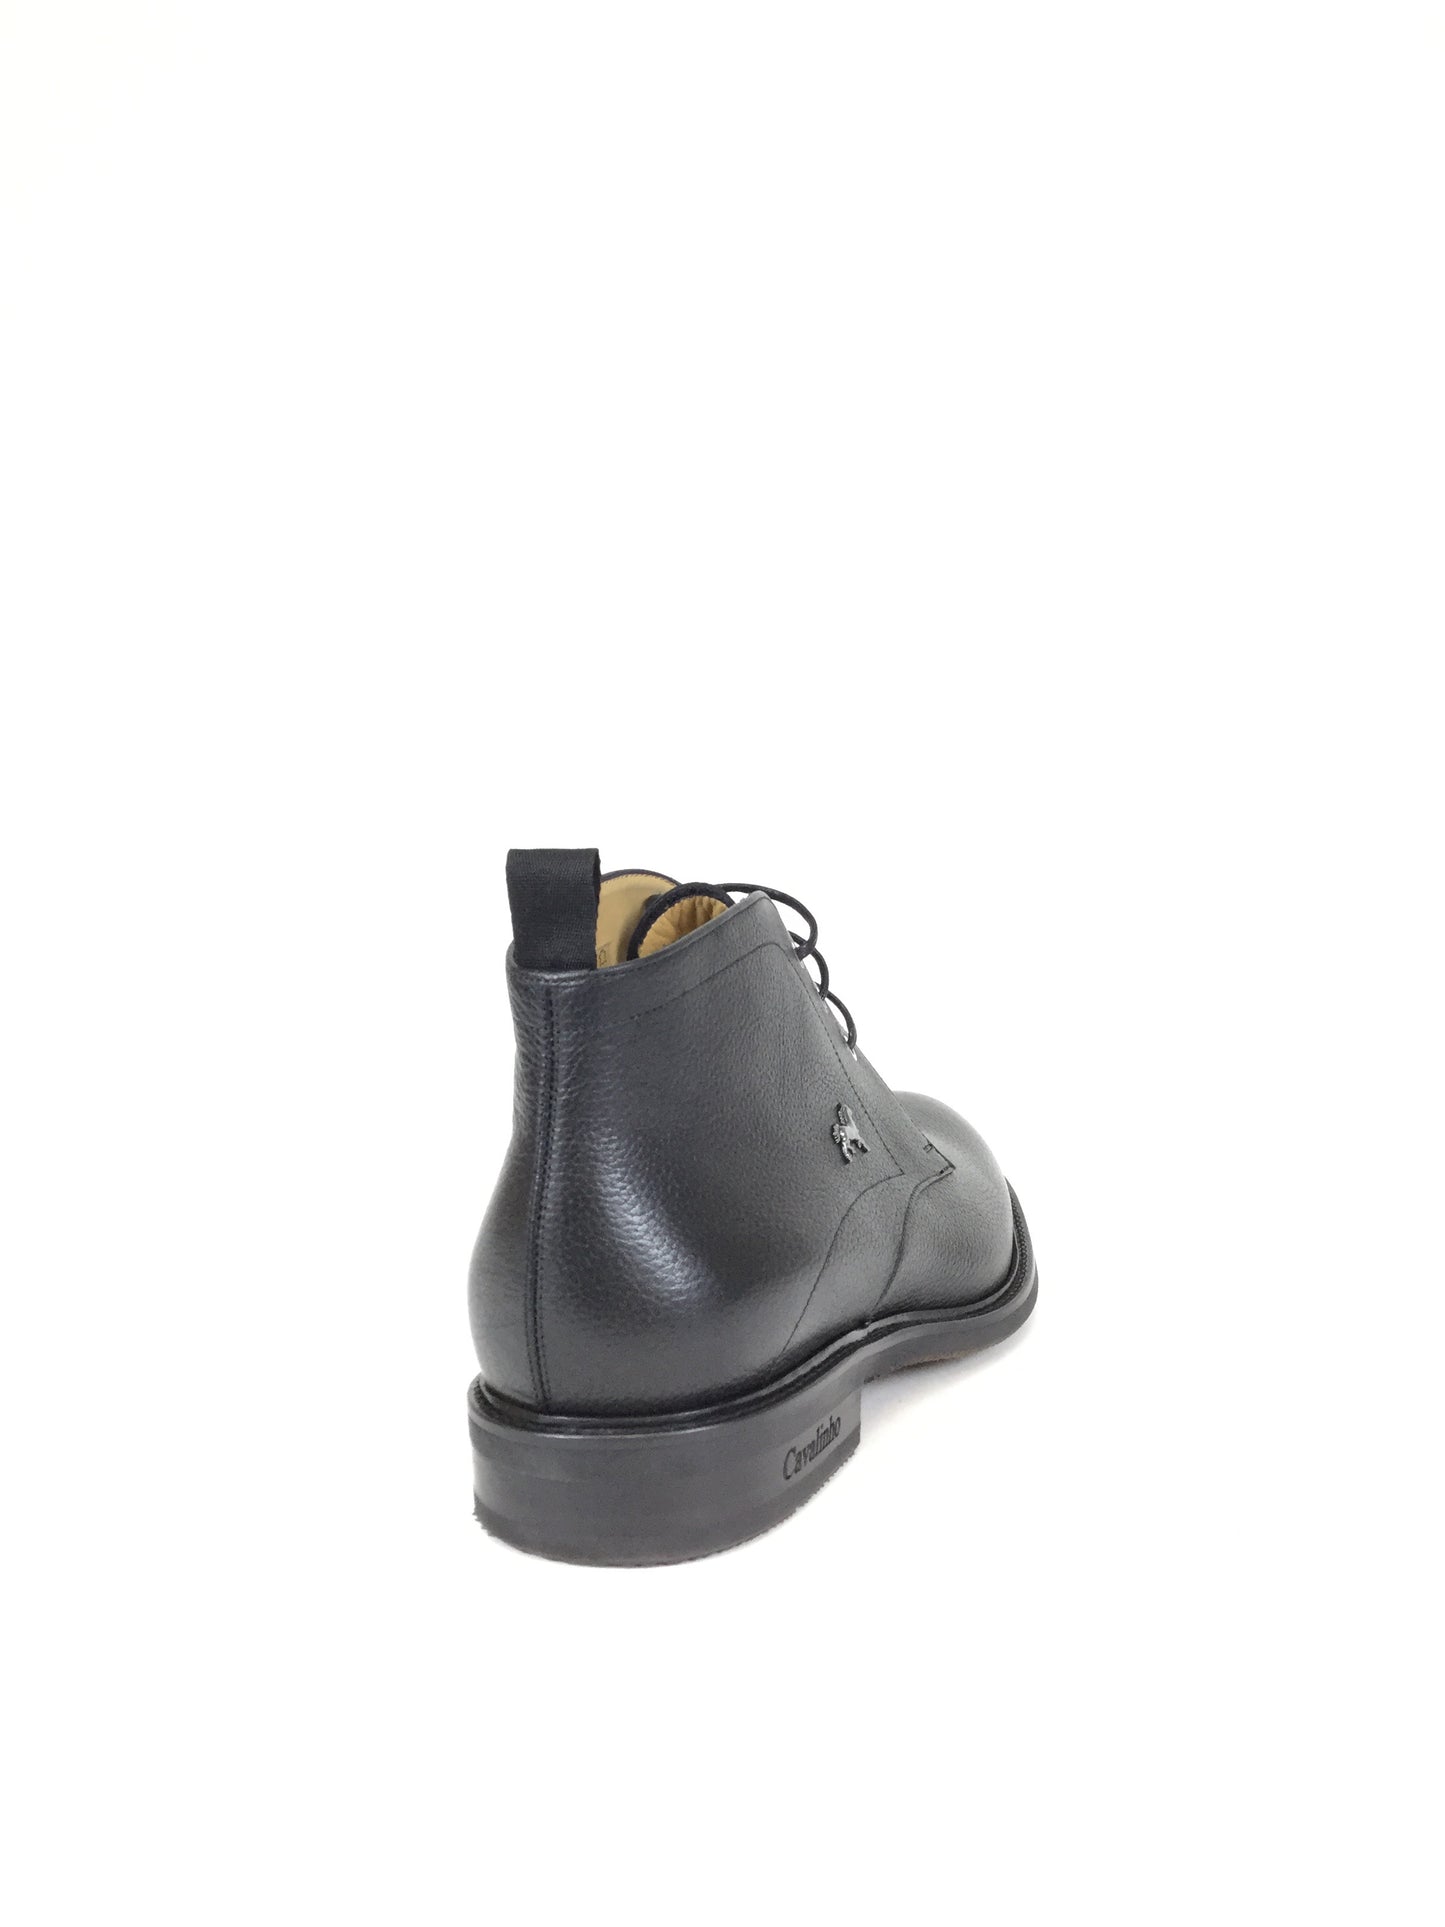 Cavalinho Chukka Boots - Size 13 - - image_ca416473-7a2e-4c8e-aedb-2f86e9c421de